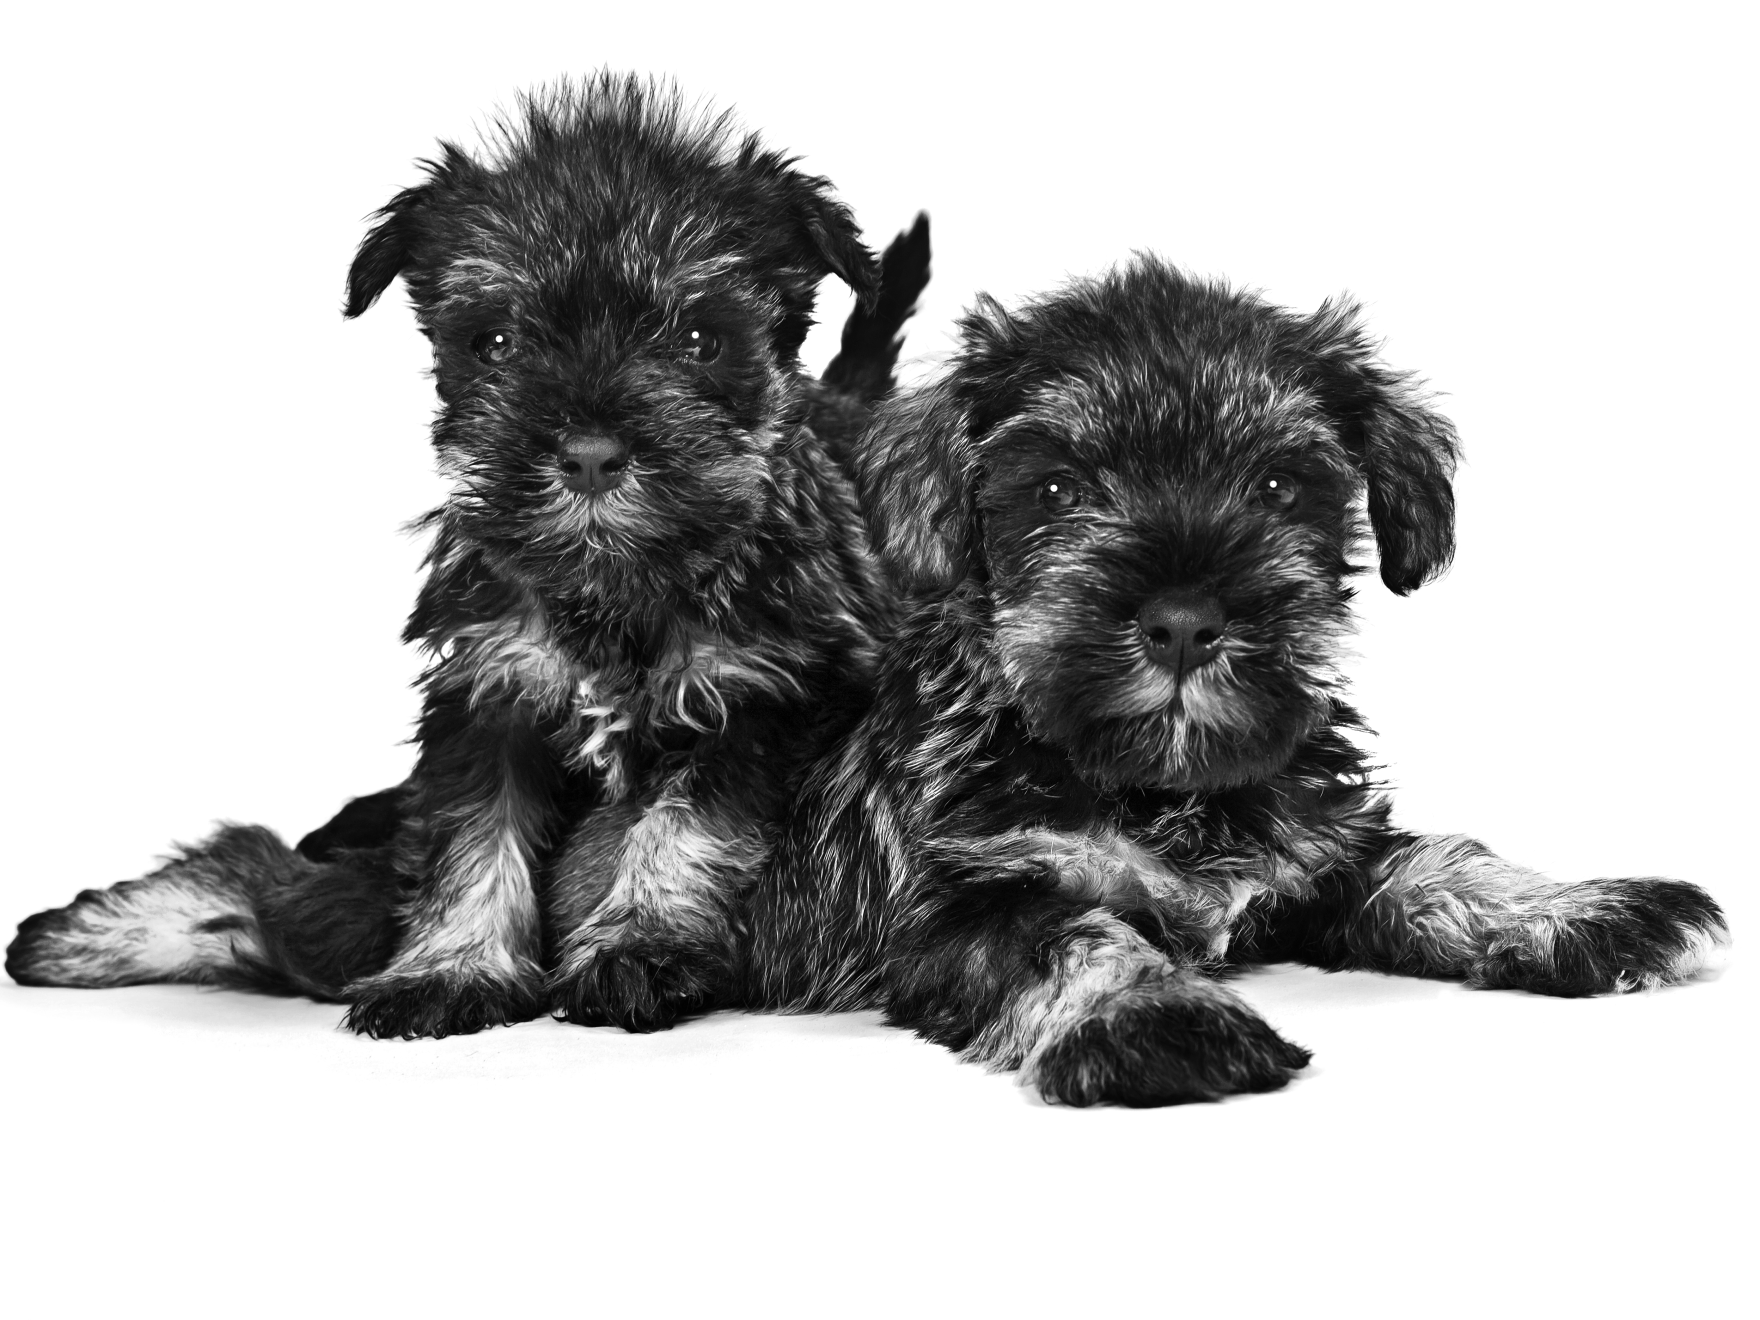 Retrato en blanco y negro de dos cachorros Schnauzer Miniatura acostados